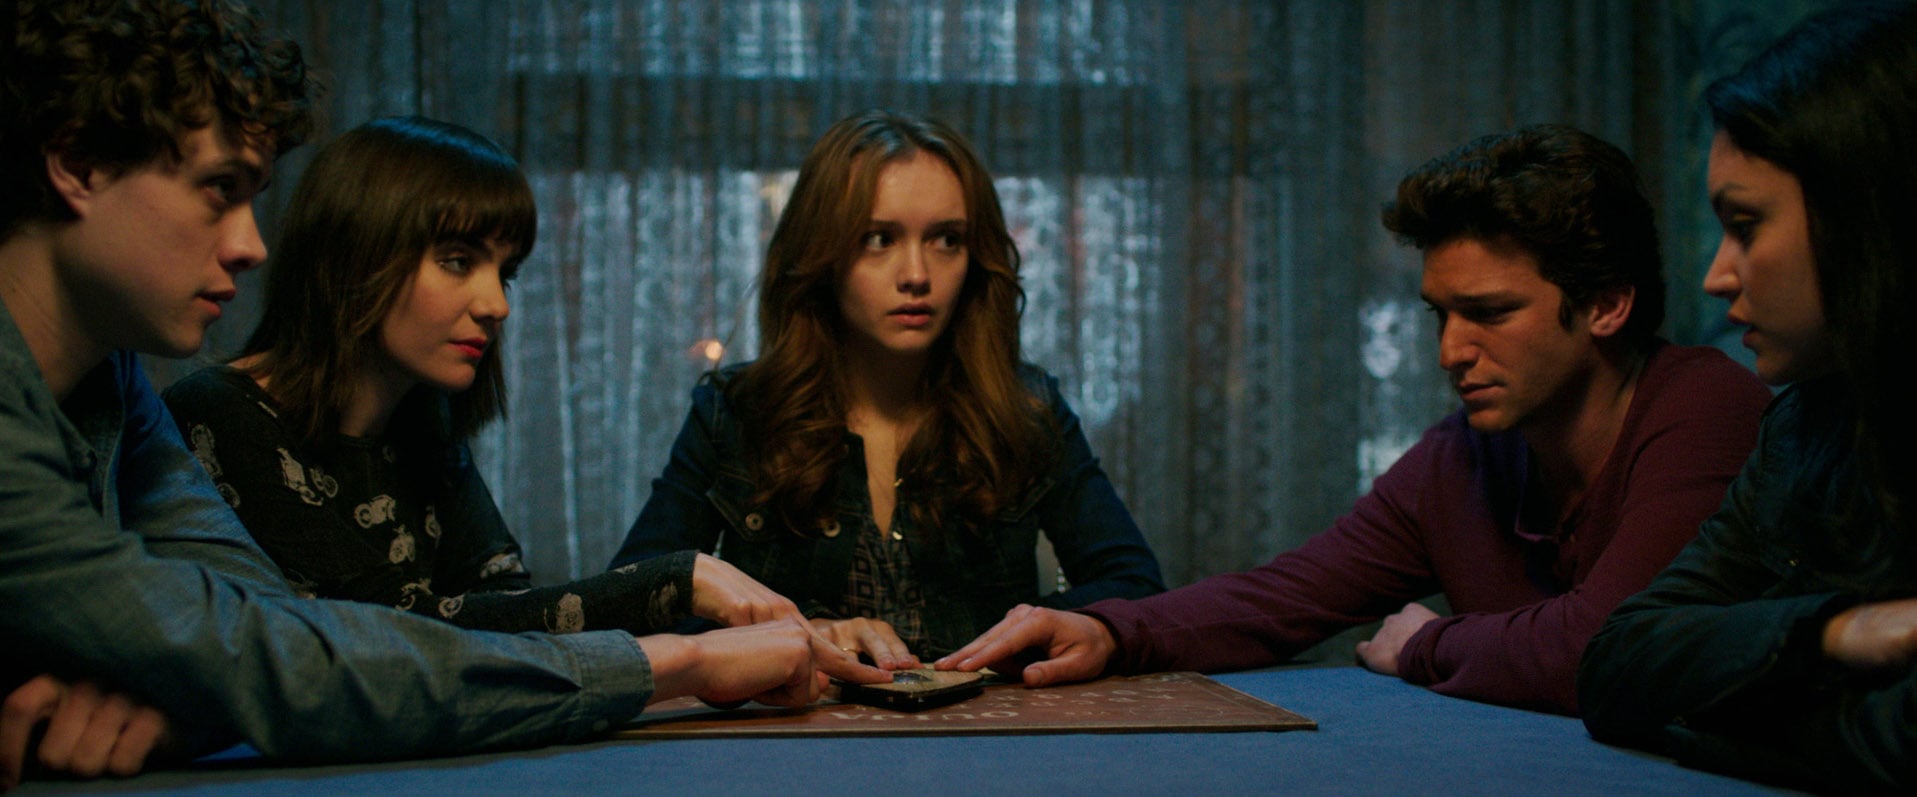 Teen Horror Movies on Netflix: "Ouija"